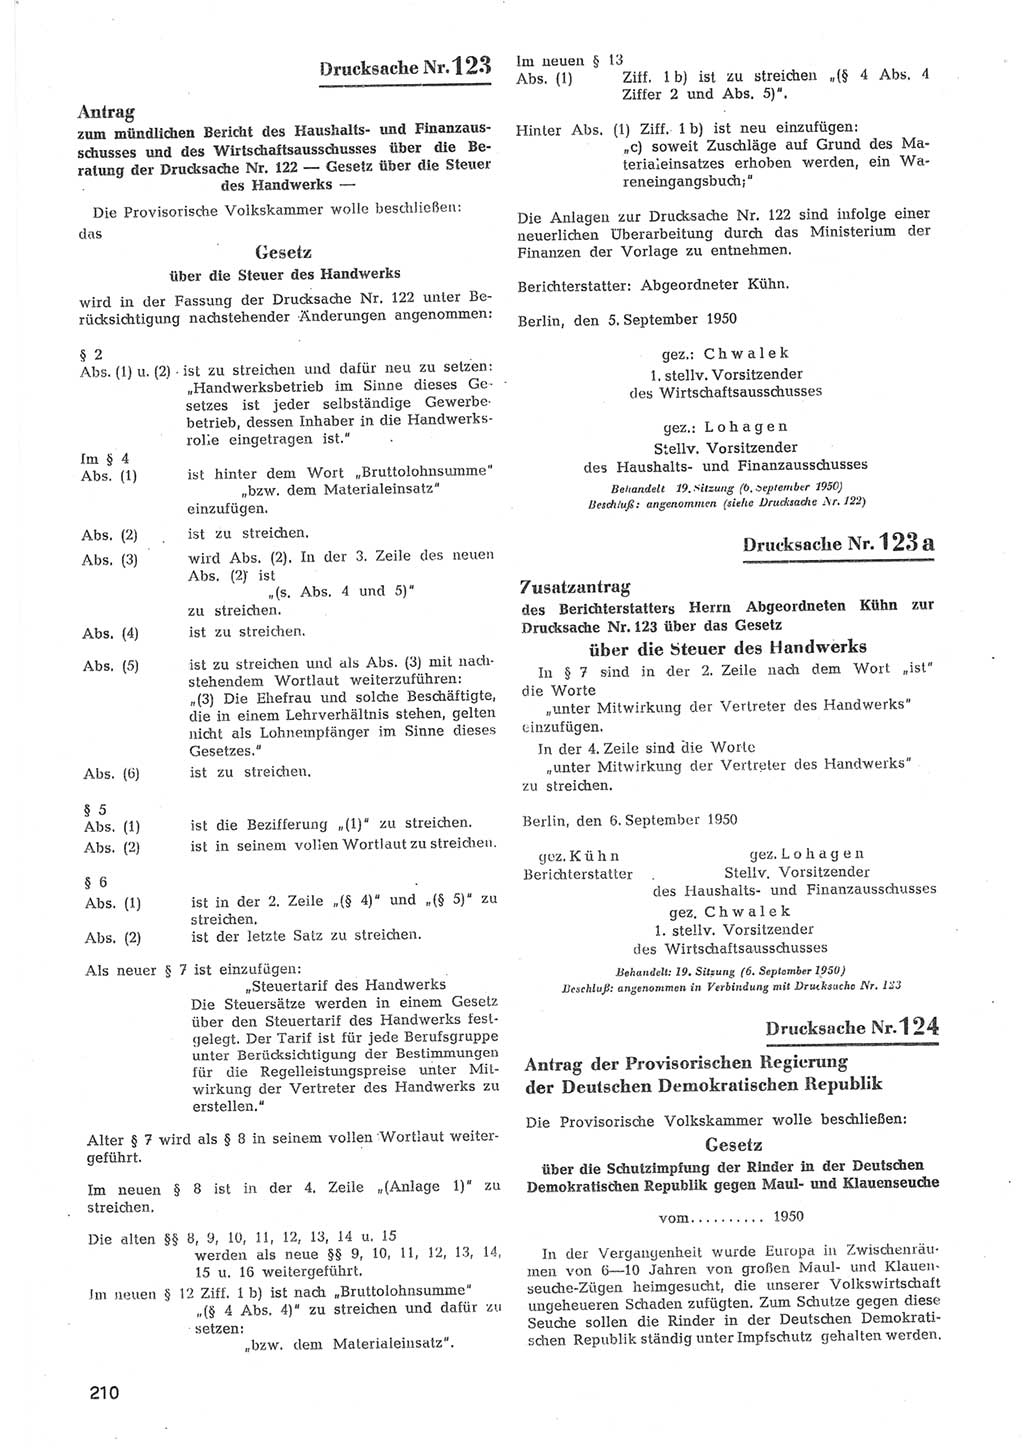 Provisorische Volkskammer (VK) der Deutschen Demokratischen Republik (DDR) 1949-1950, Dokument 812 (Prov. VK DDR 1949-1950, Dok. 812)